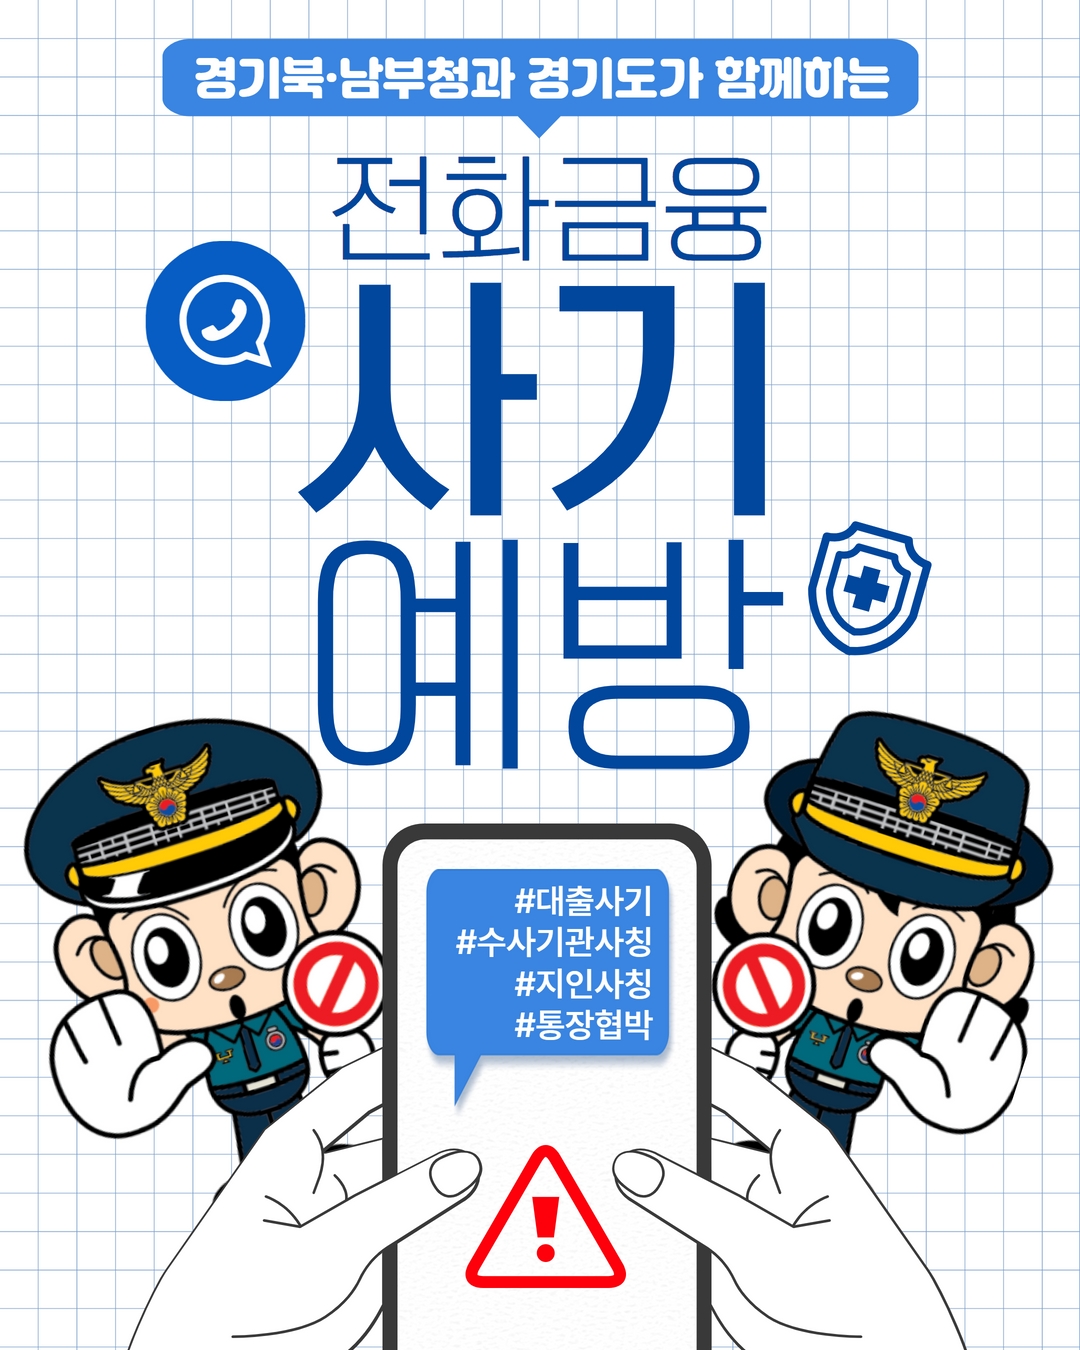 경기북부경찰청과 함께하는 '전화금융 사기 예방법'